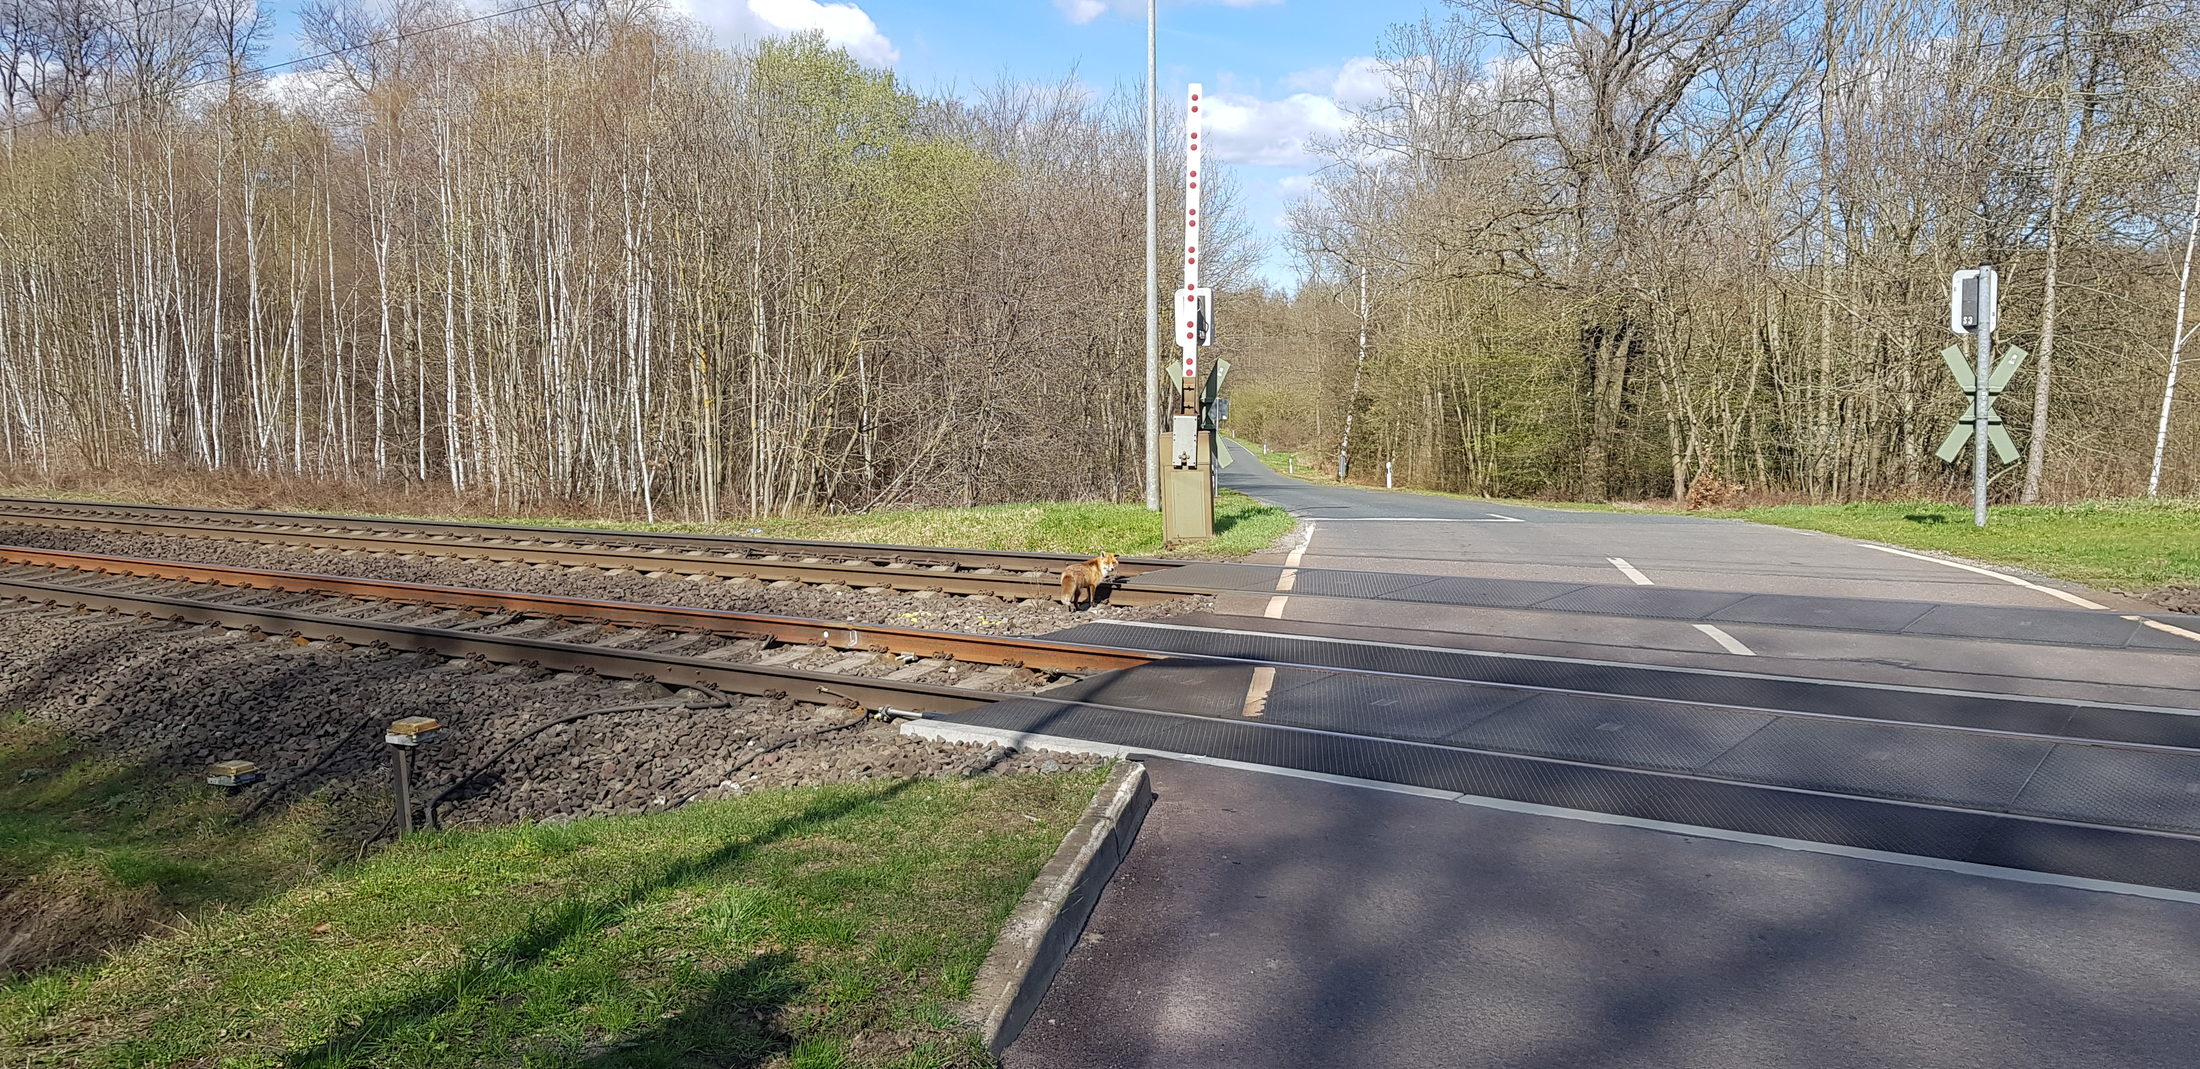 Fuchs am Bahnübergang Marienborn (Wird bei Klick vergrößert)